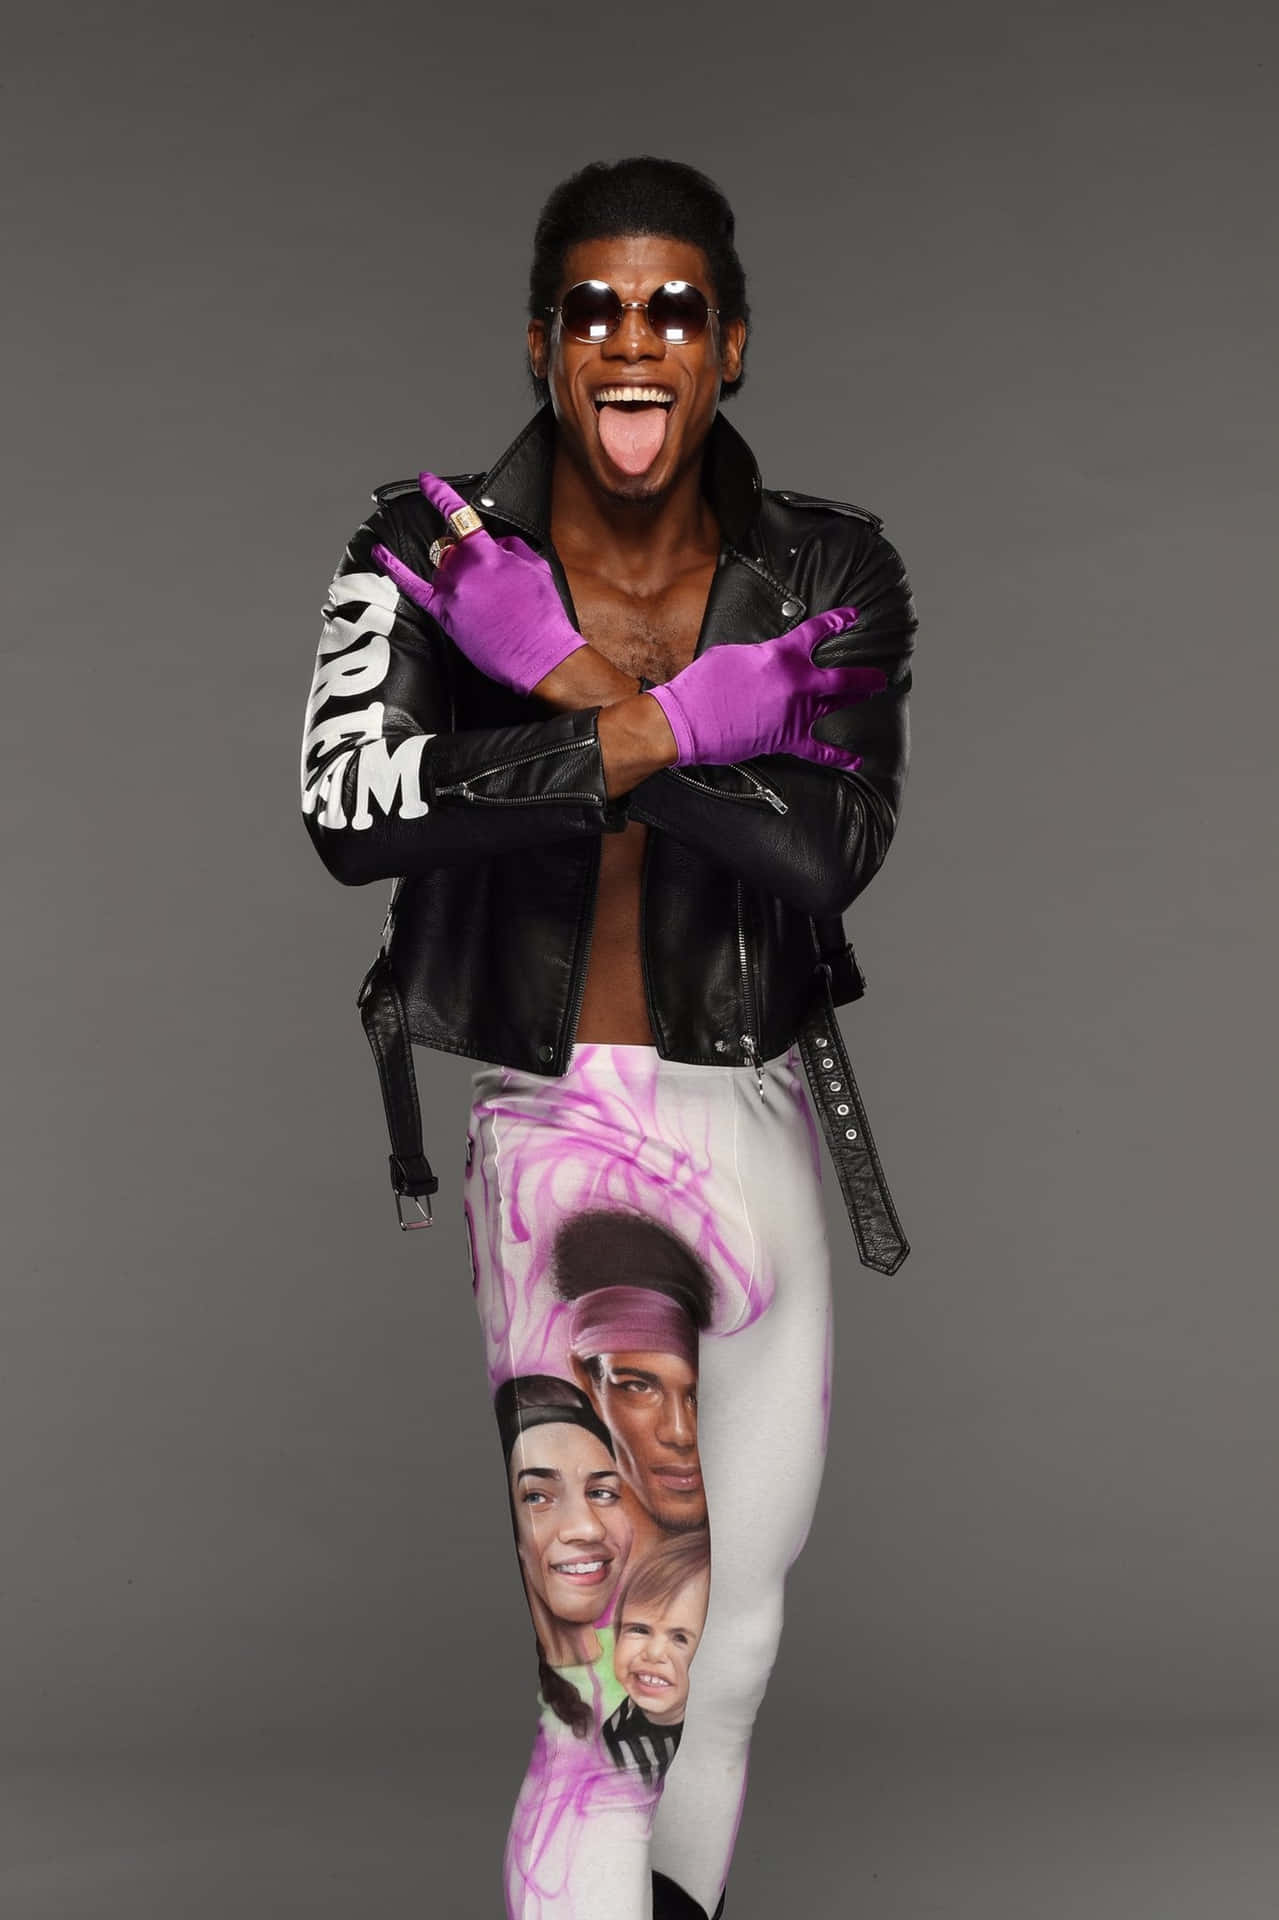 WWE NXT Superstar, Velveteen Dream, during a vivid photoshoot. Wallpaper